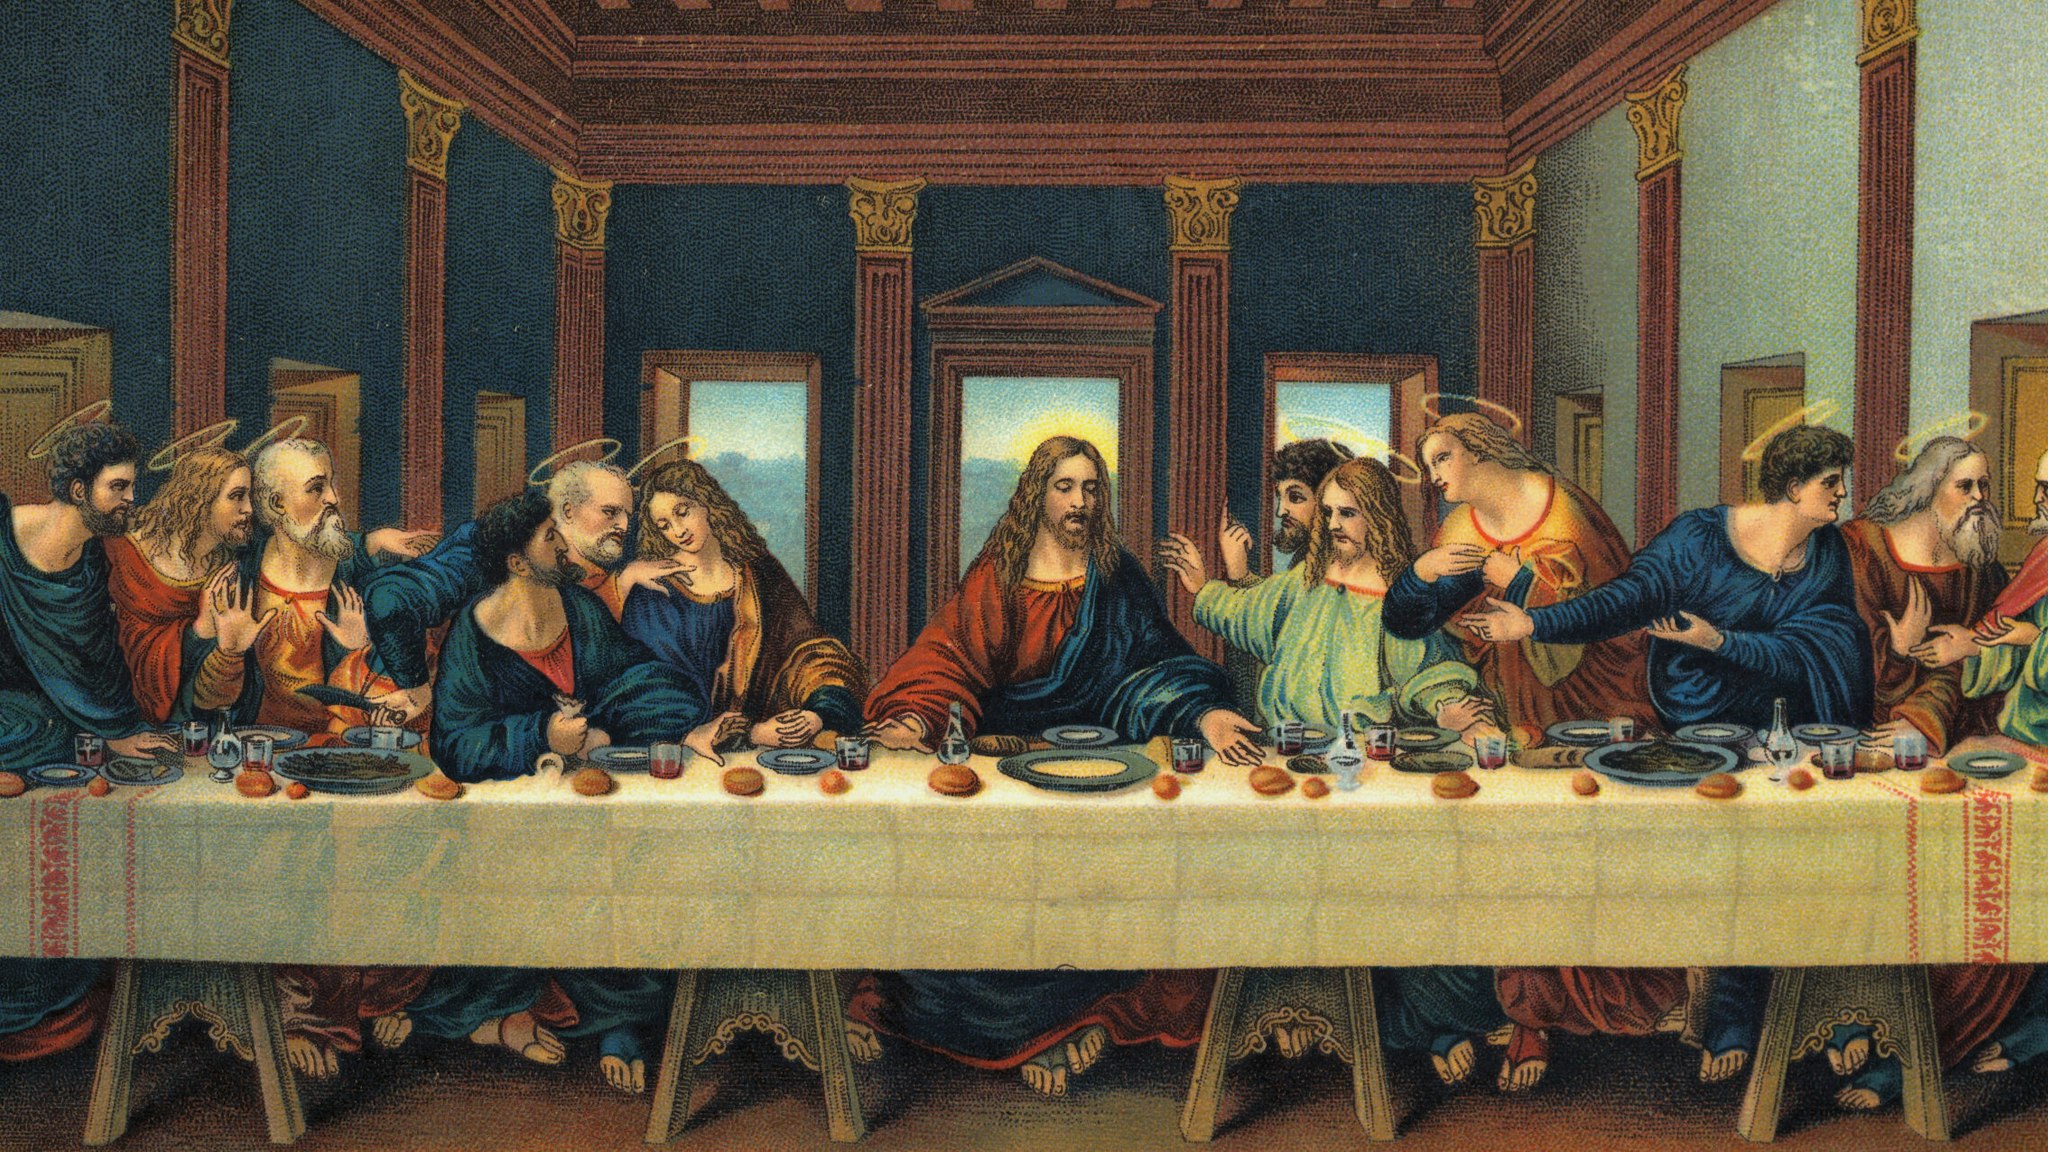 An illustration based after The Last Supper by Leonardo da Vinci.